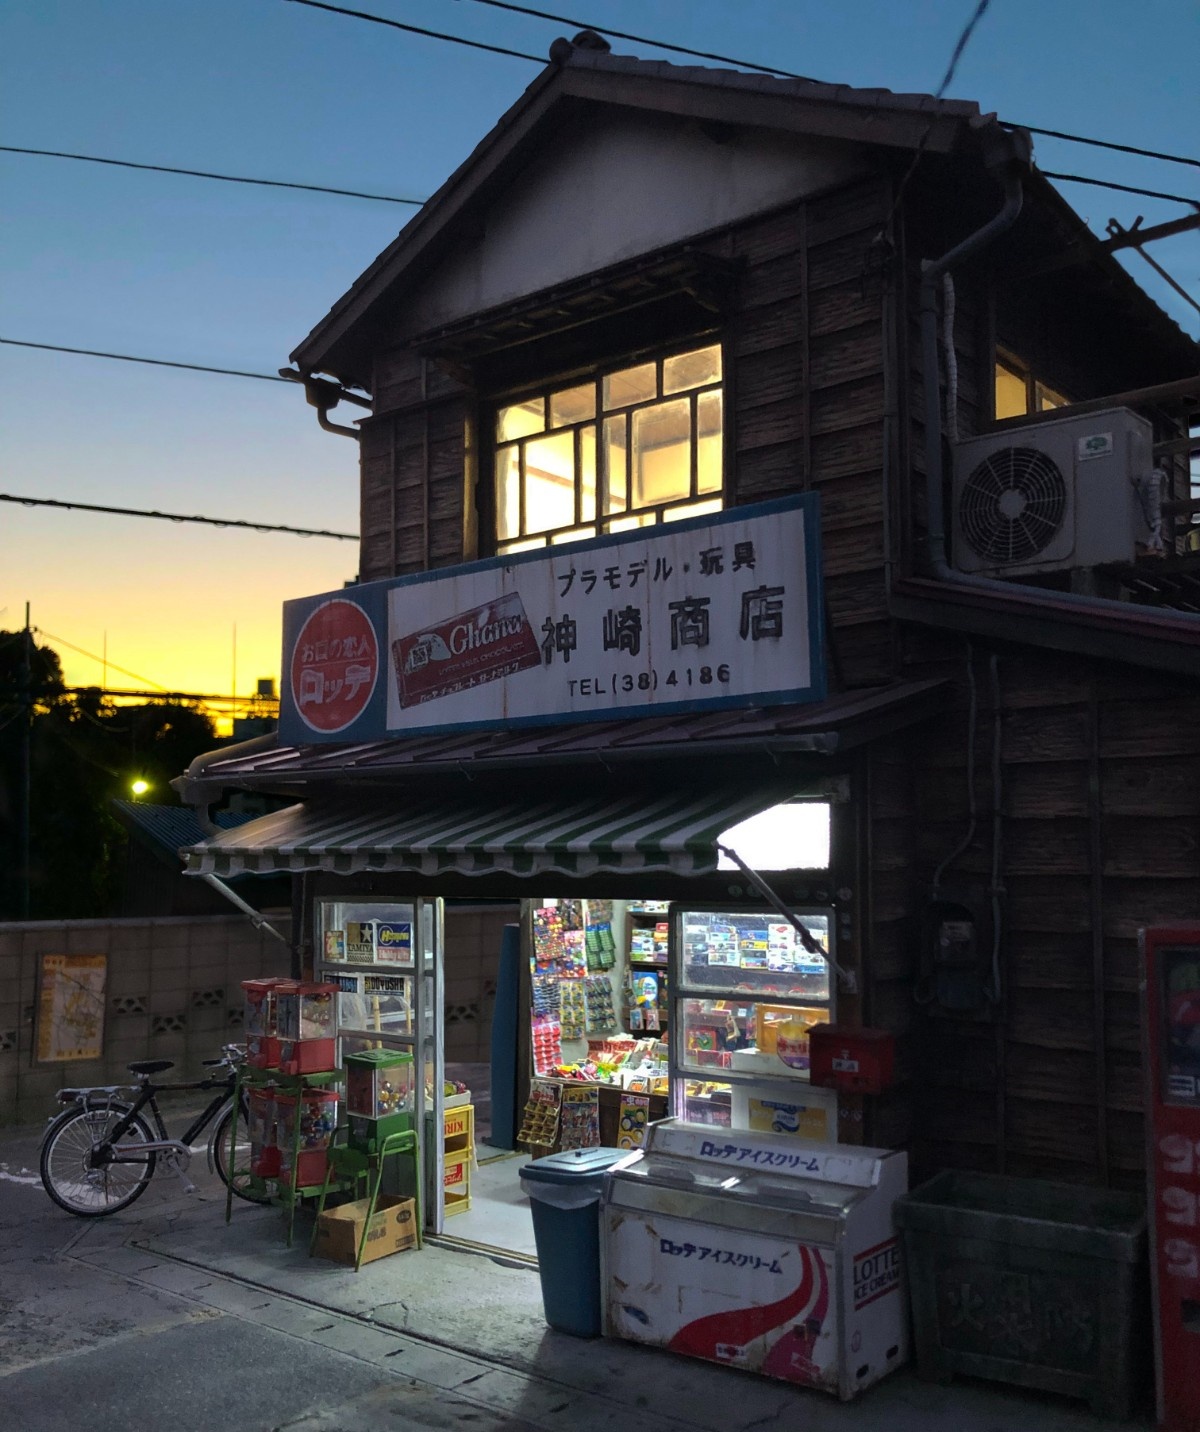 不說以為是真的！微型大師打造「80年代日本柑仔店」　走進屋內「牆上掛滿童年回憶」彷彿以前的台灣